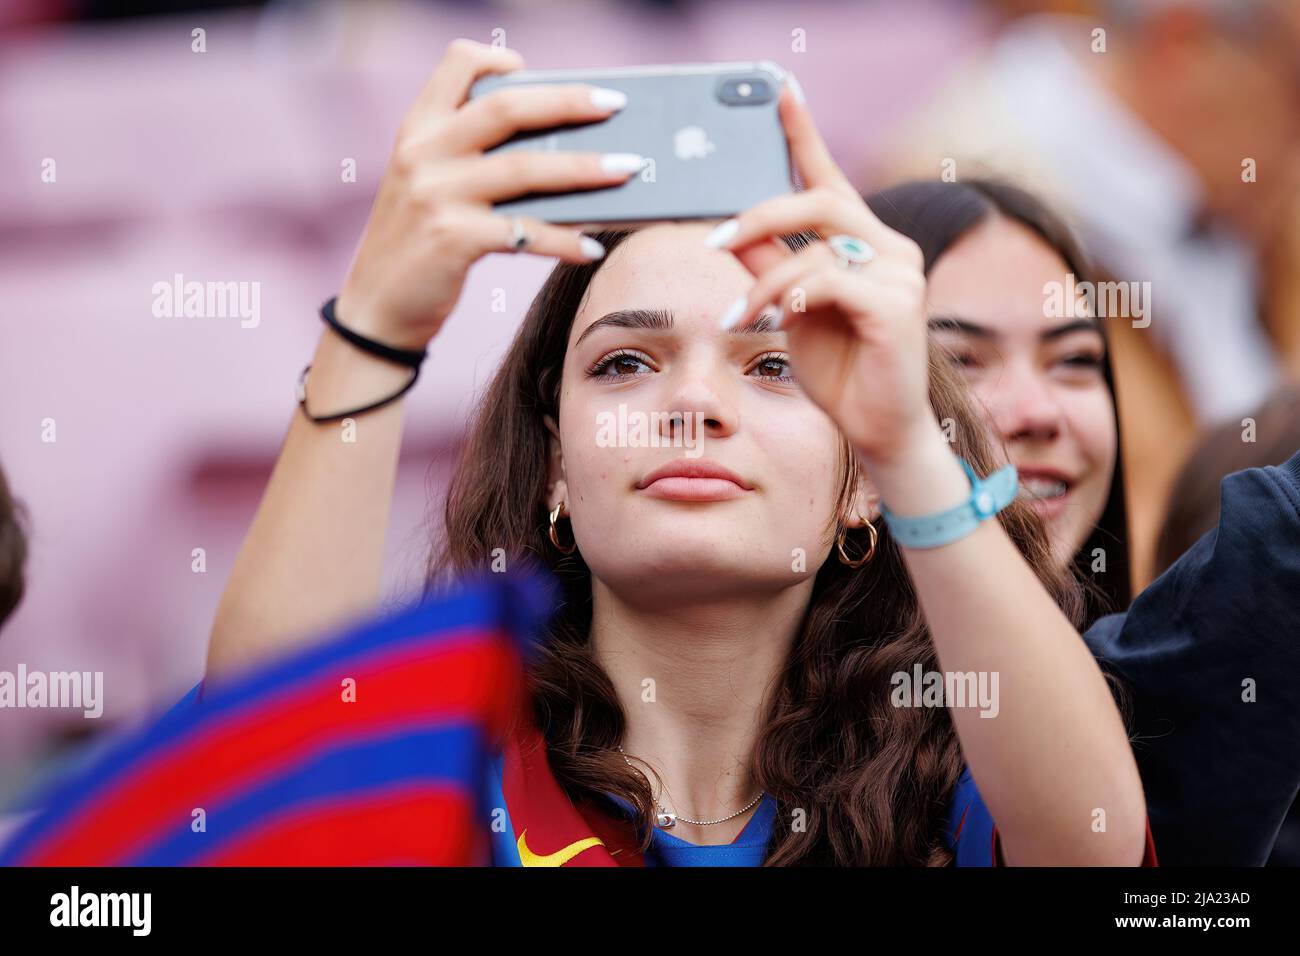 BARCELONA - APR 22: Eine Unterstützerin, die während des UEFA Women's Champions League-Spiels zwischen dem FC Barcelona und dem VfL Wolfsburg ein Foto mit ihrem Handy macht Stockfoto